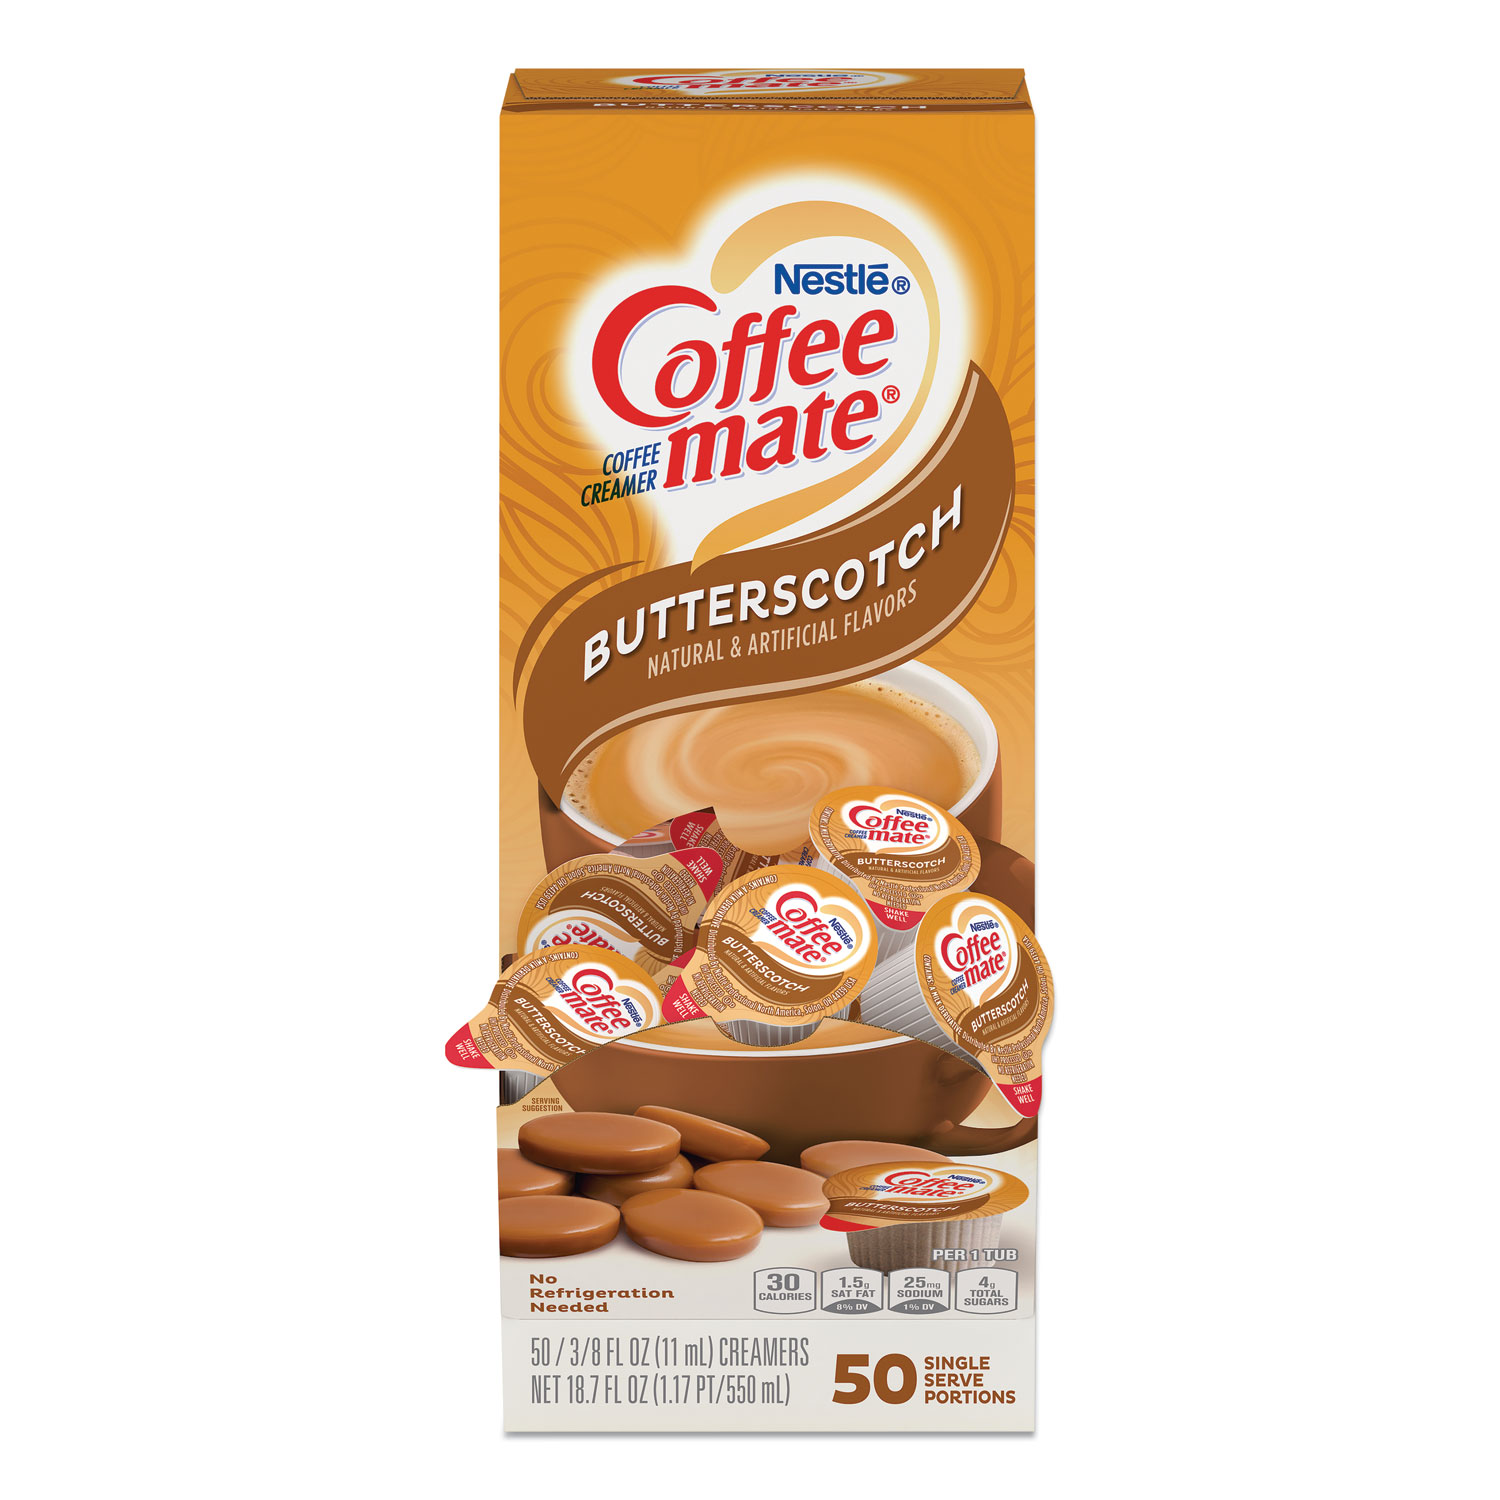 Coffee mate® Liquid Coffee Creamer, Butterscotch, 0.38 oz Mini Cups, 50 Cups/Box